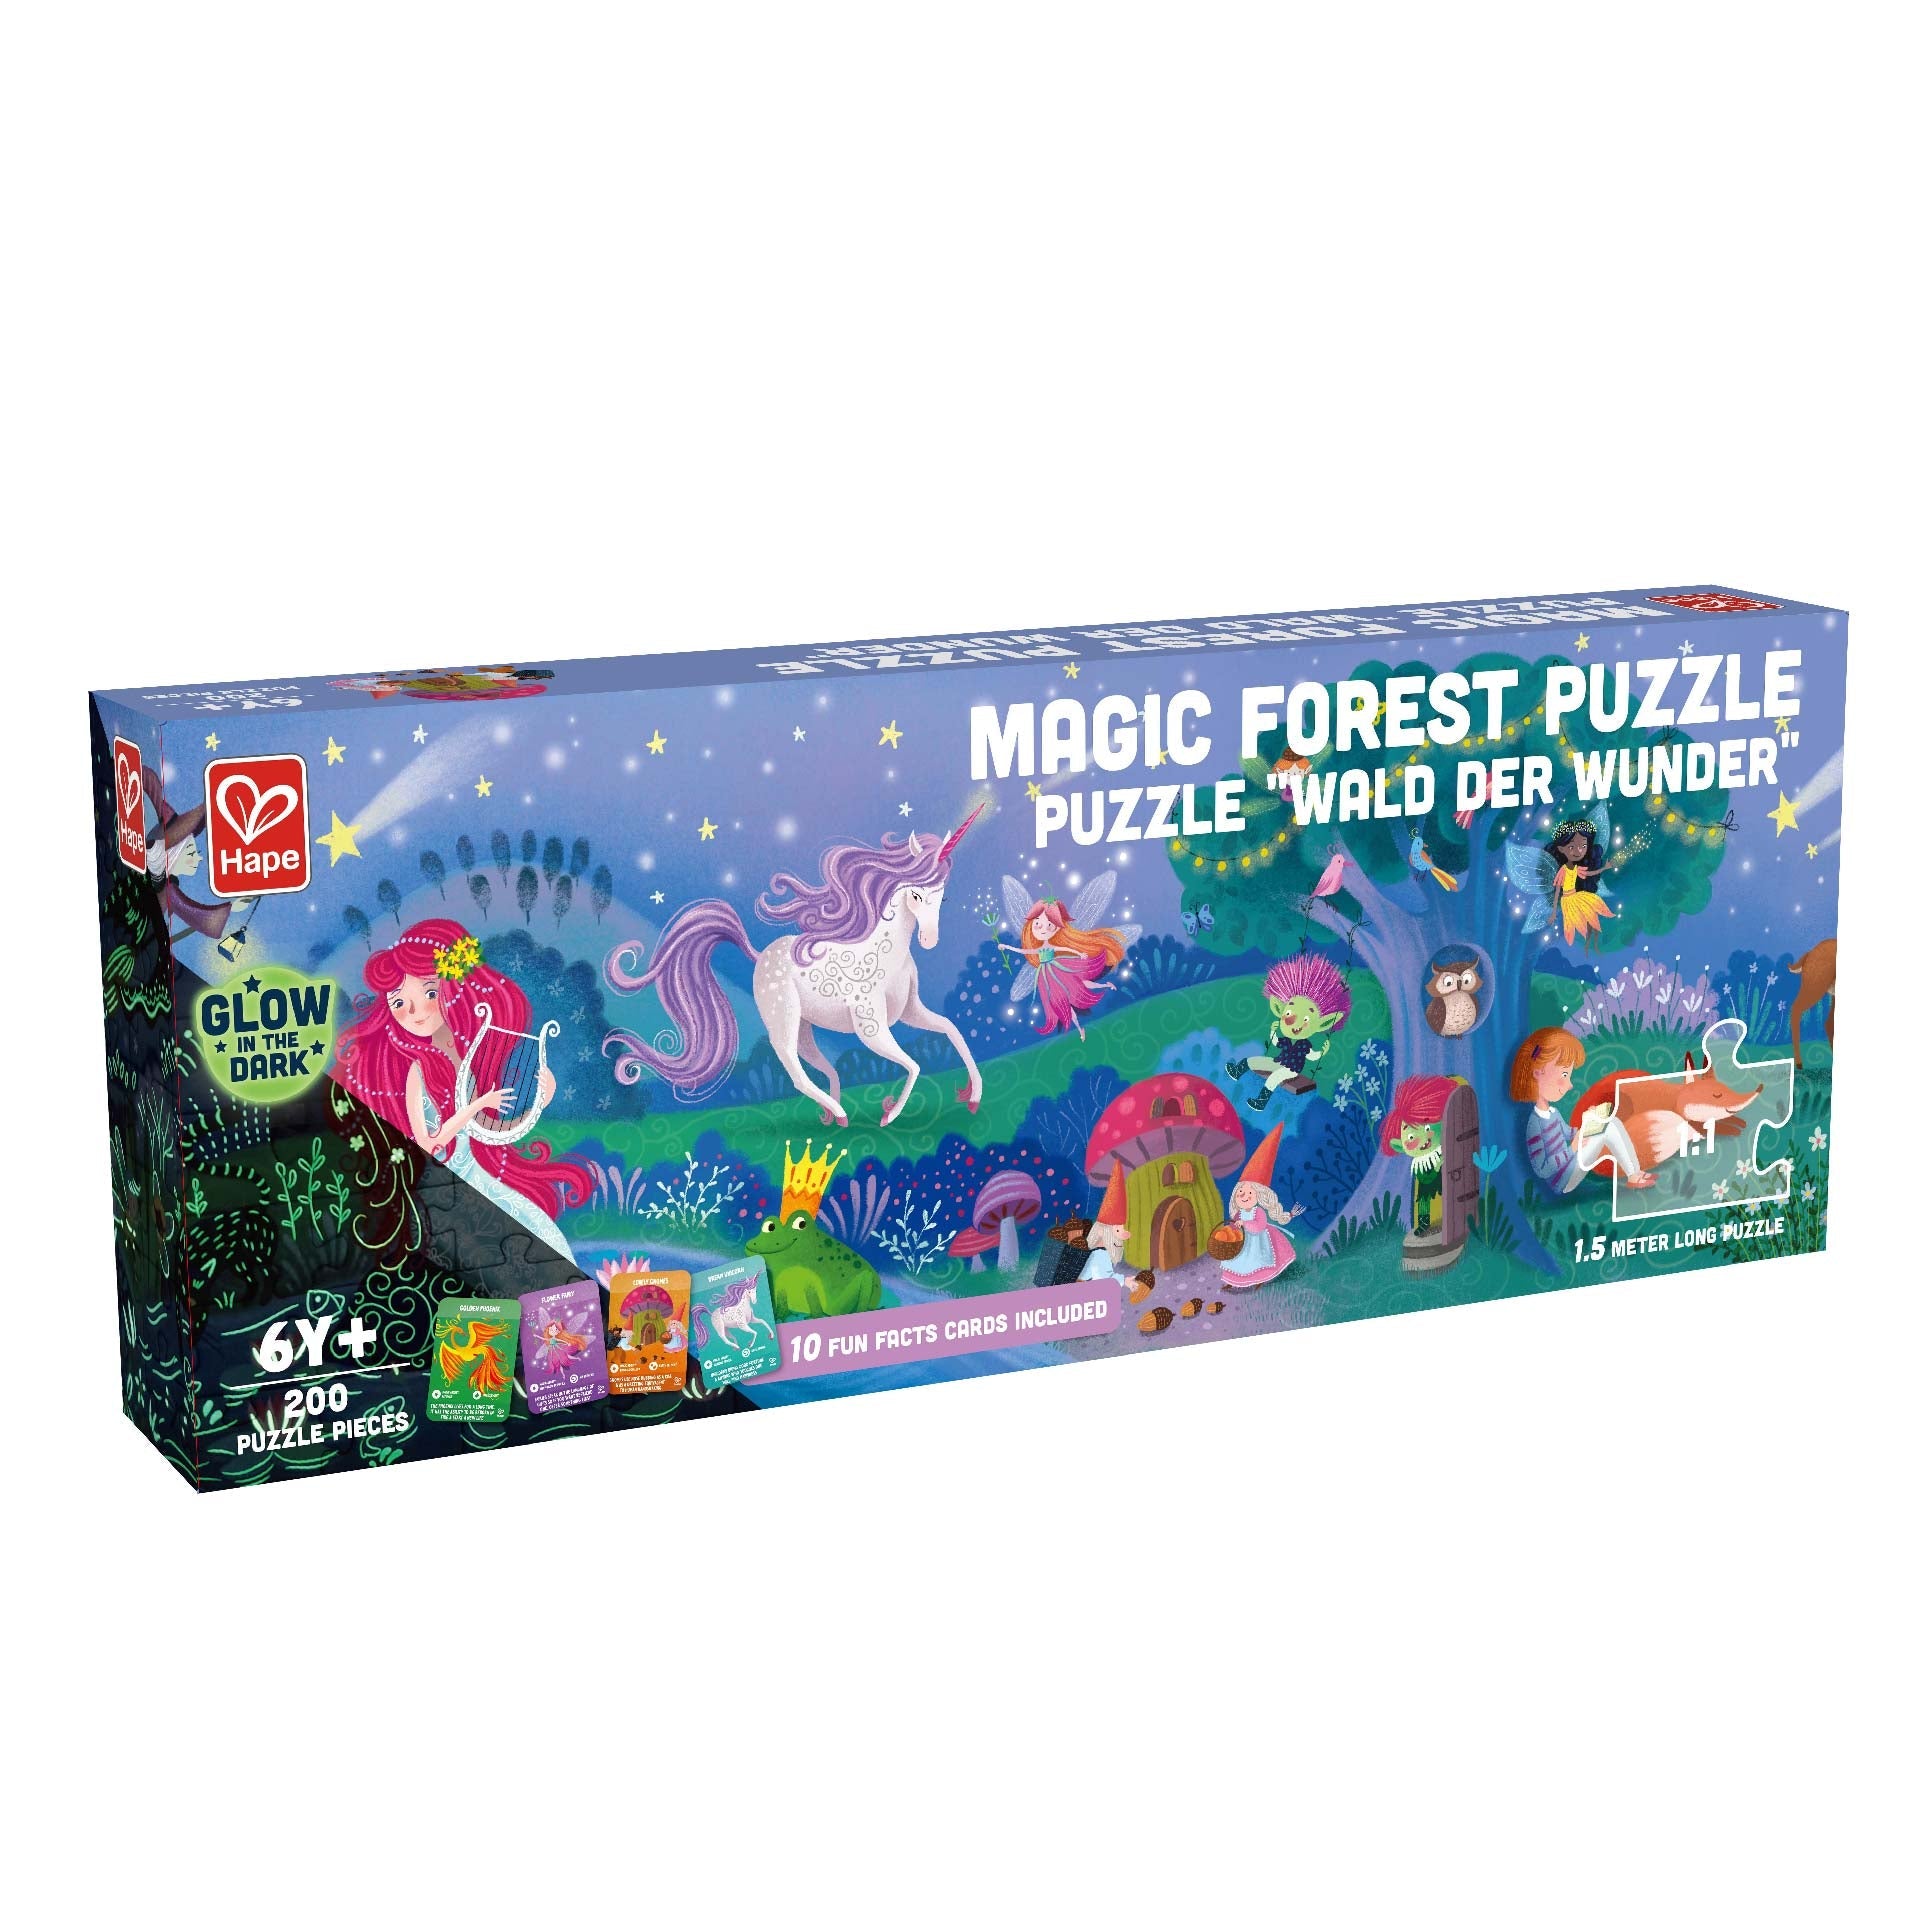 Hape Magic Forest Puzzle 200 Pieces Colorful Giant long puzzle